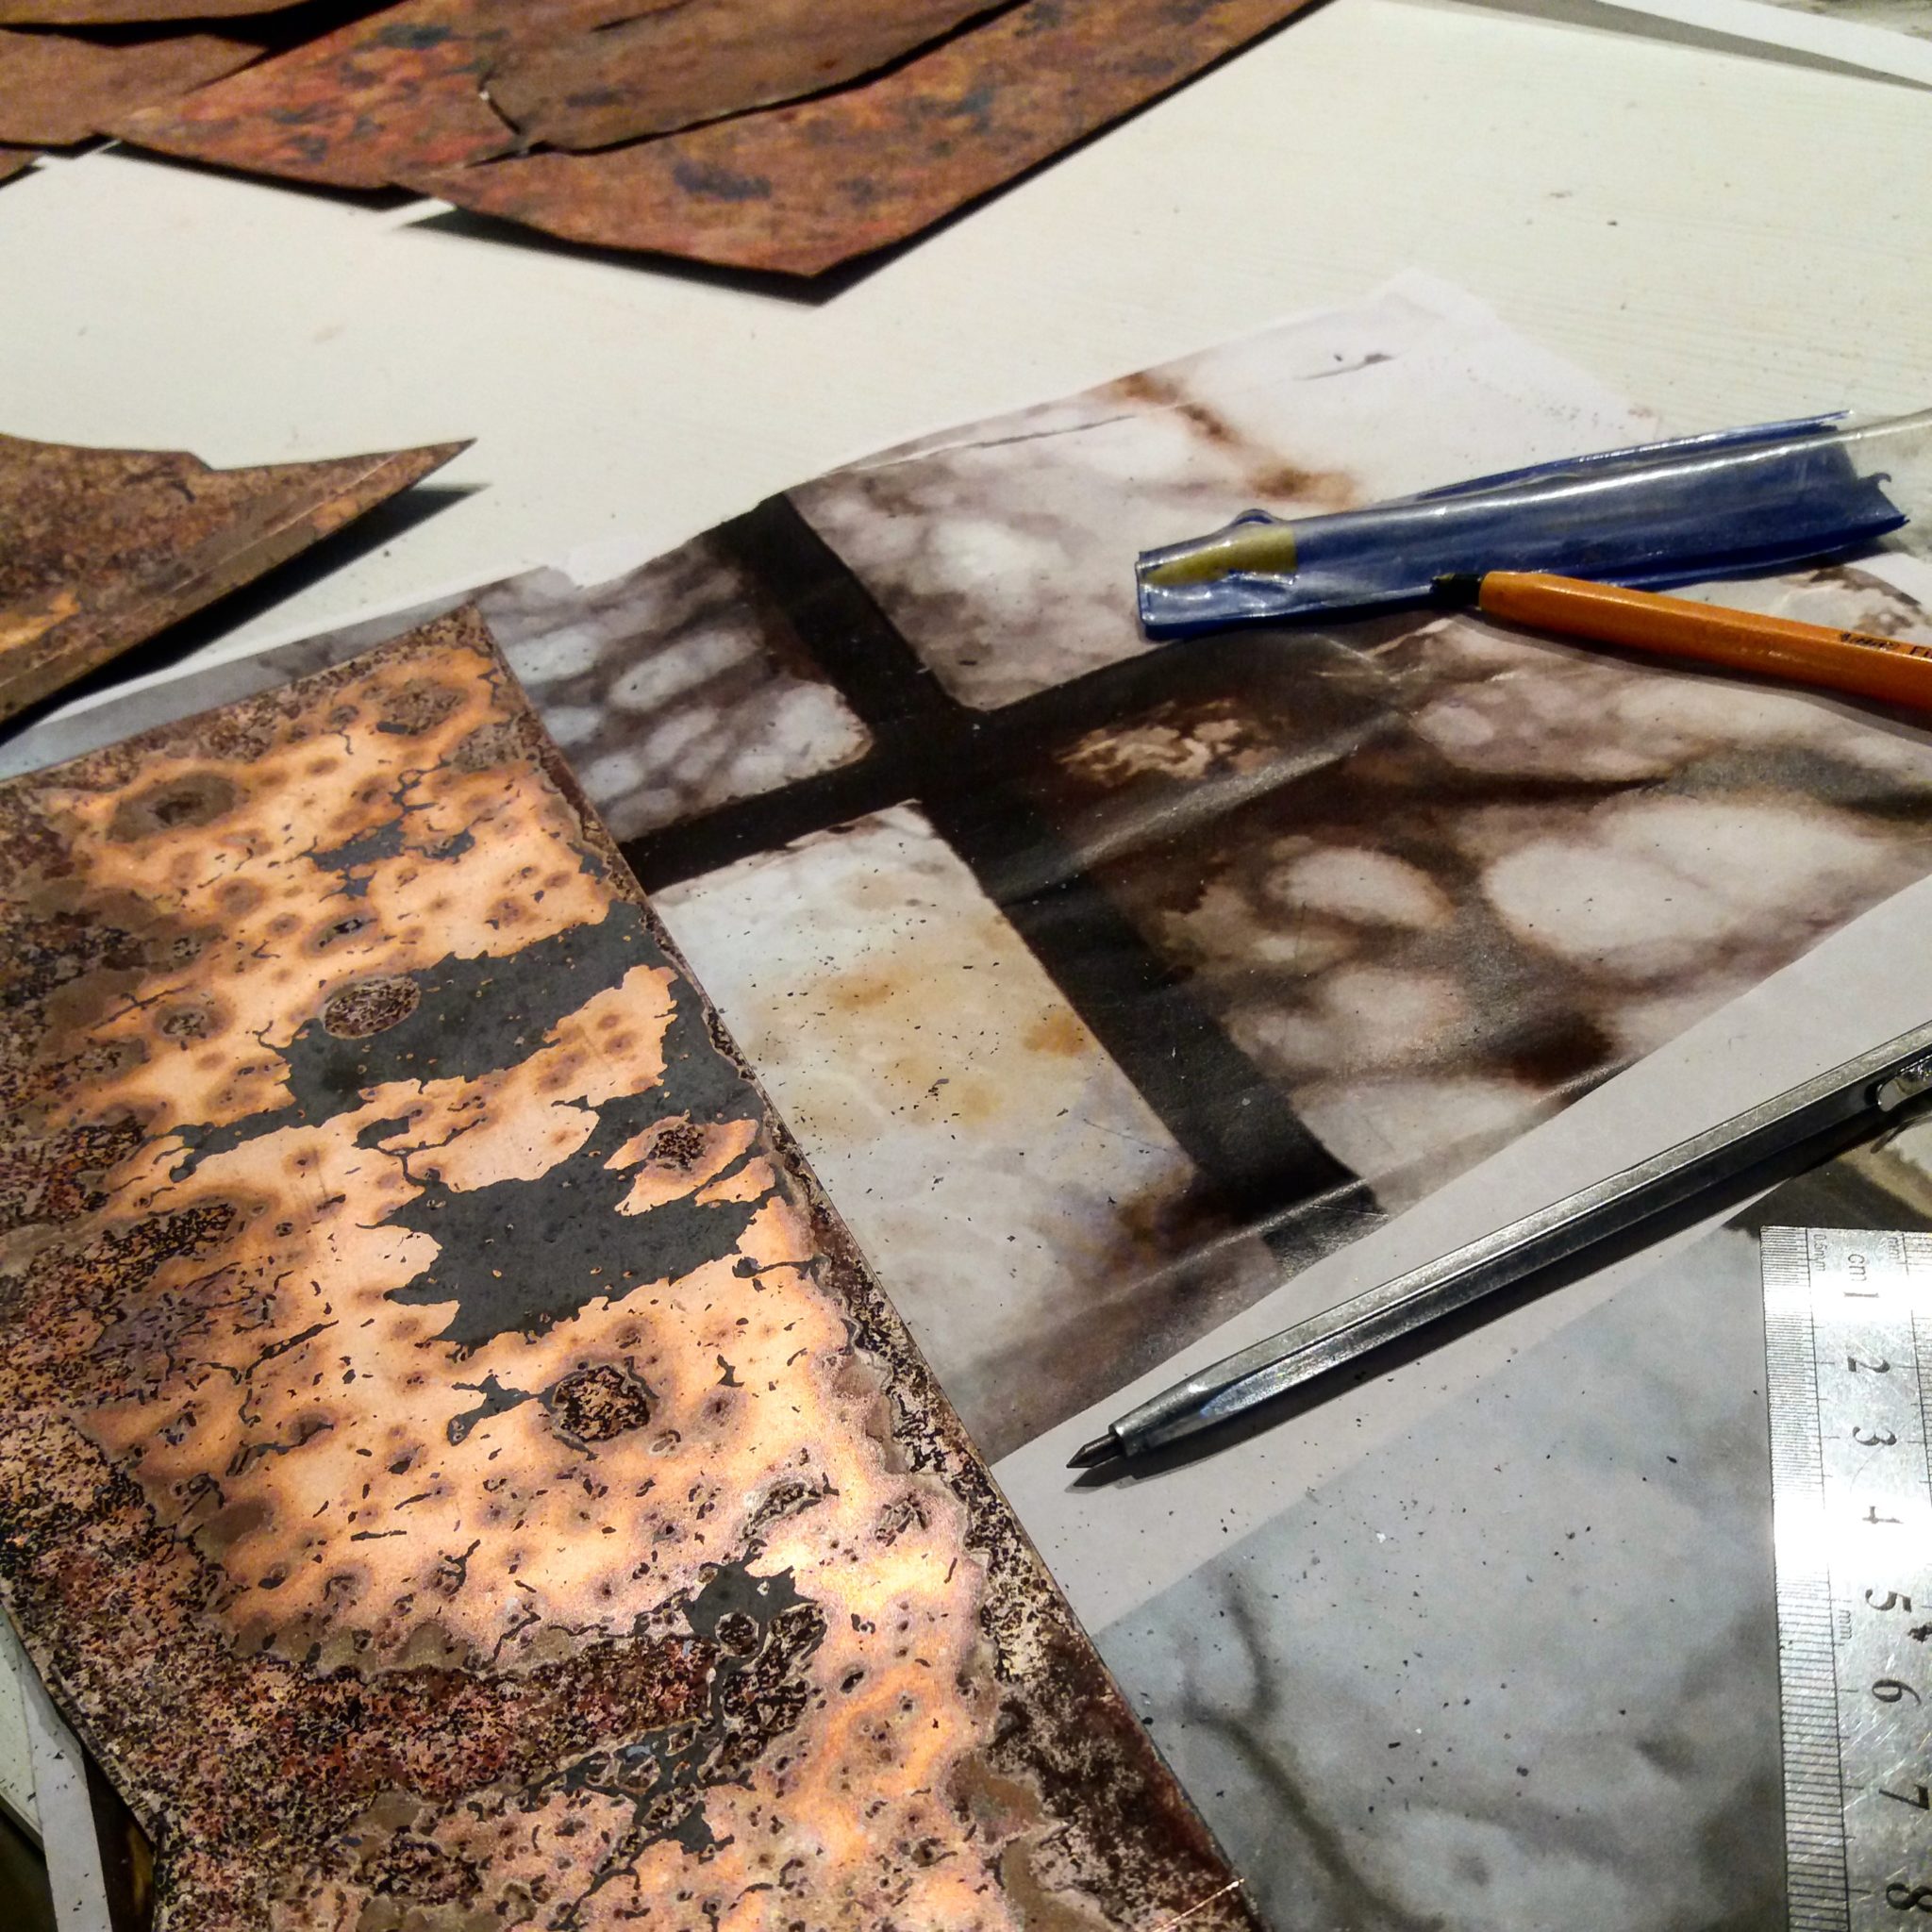 Exposition Dialogue - préparation de la plaque de cuivre pour la création émaillée représentant la photo de la fenêtre